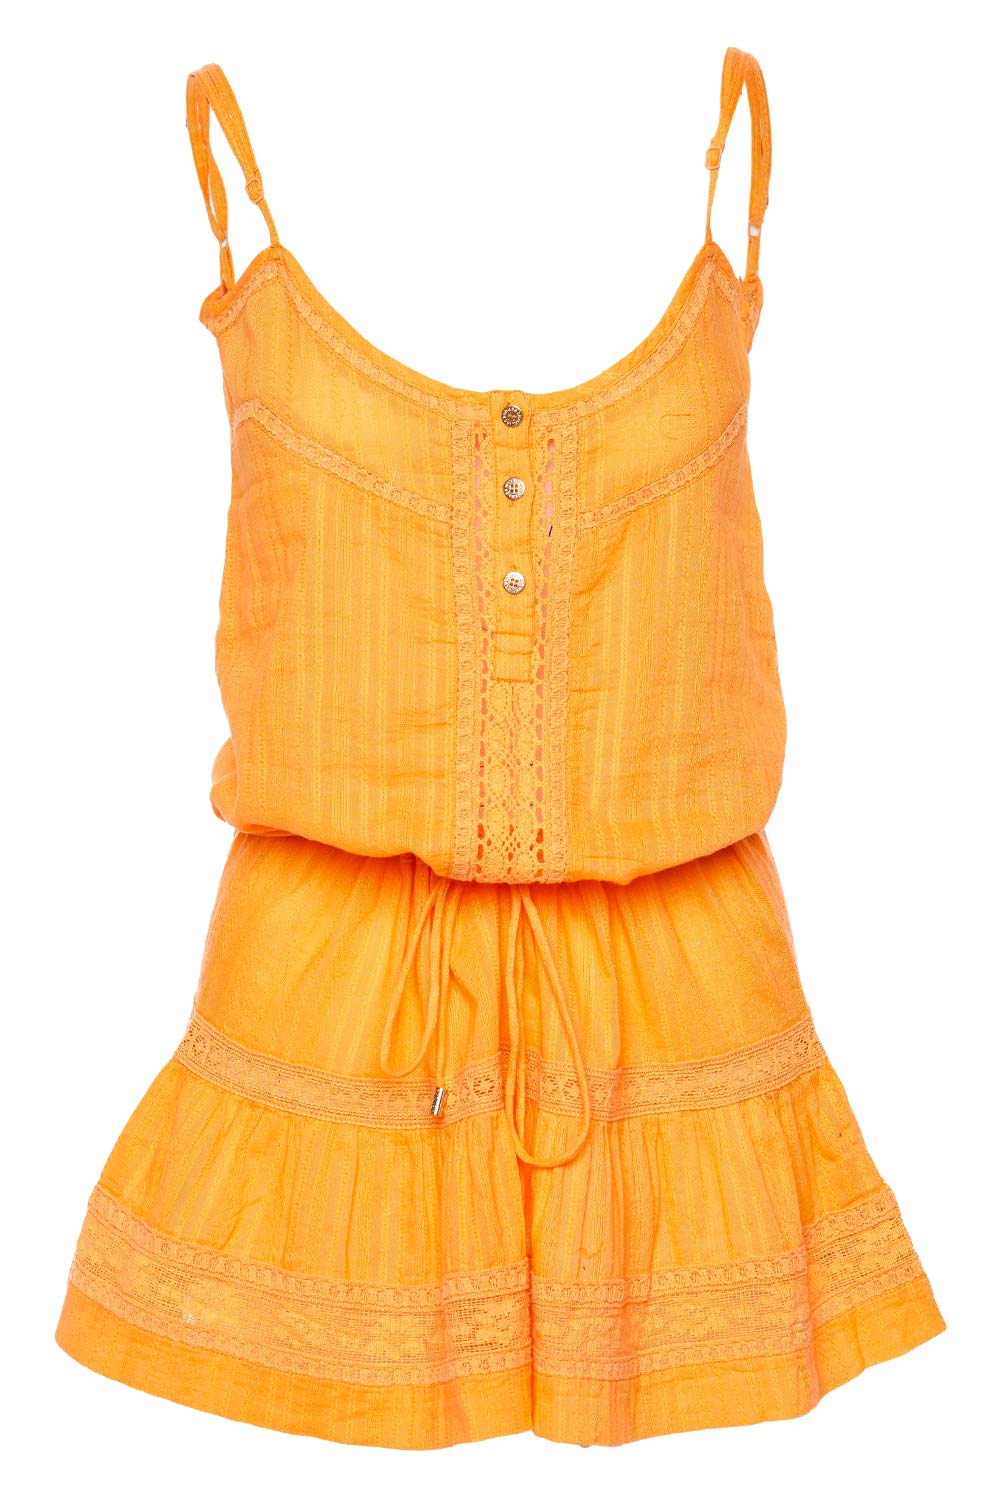 Melissa Odabash Kelly Orange Cover Up Mini Dress